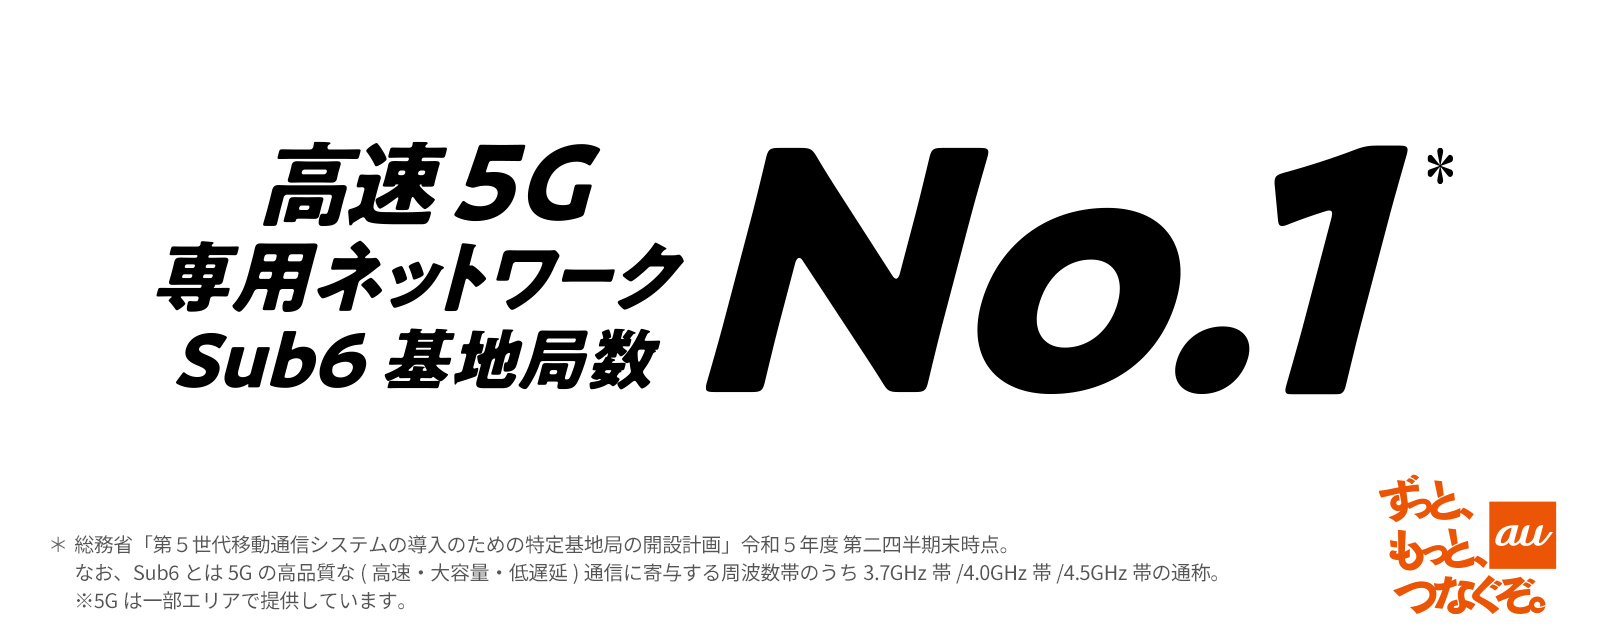 高速 5G 専用ネットワーク Sub6 基地局数No.1 ずっと、もっと、つなぐぞ。au